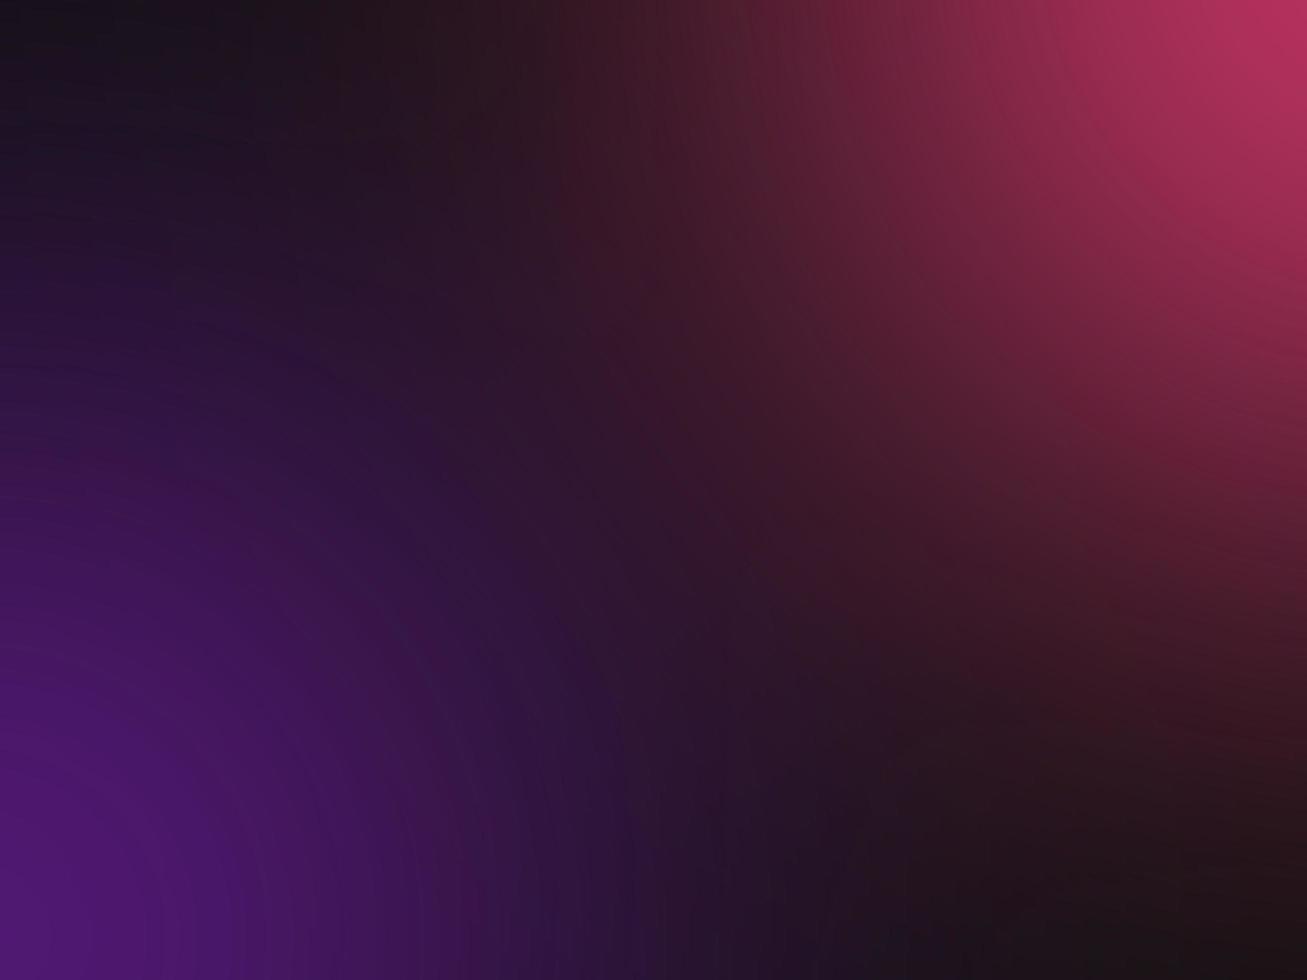 Dark Pink Purple Liquid Blur Gradient Background photo